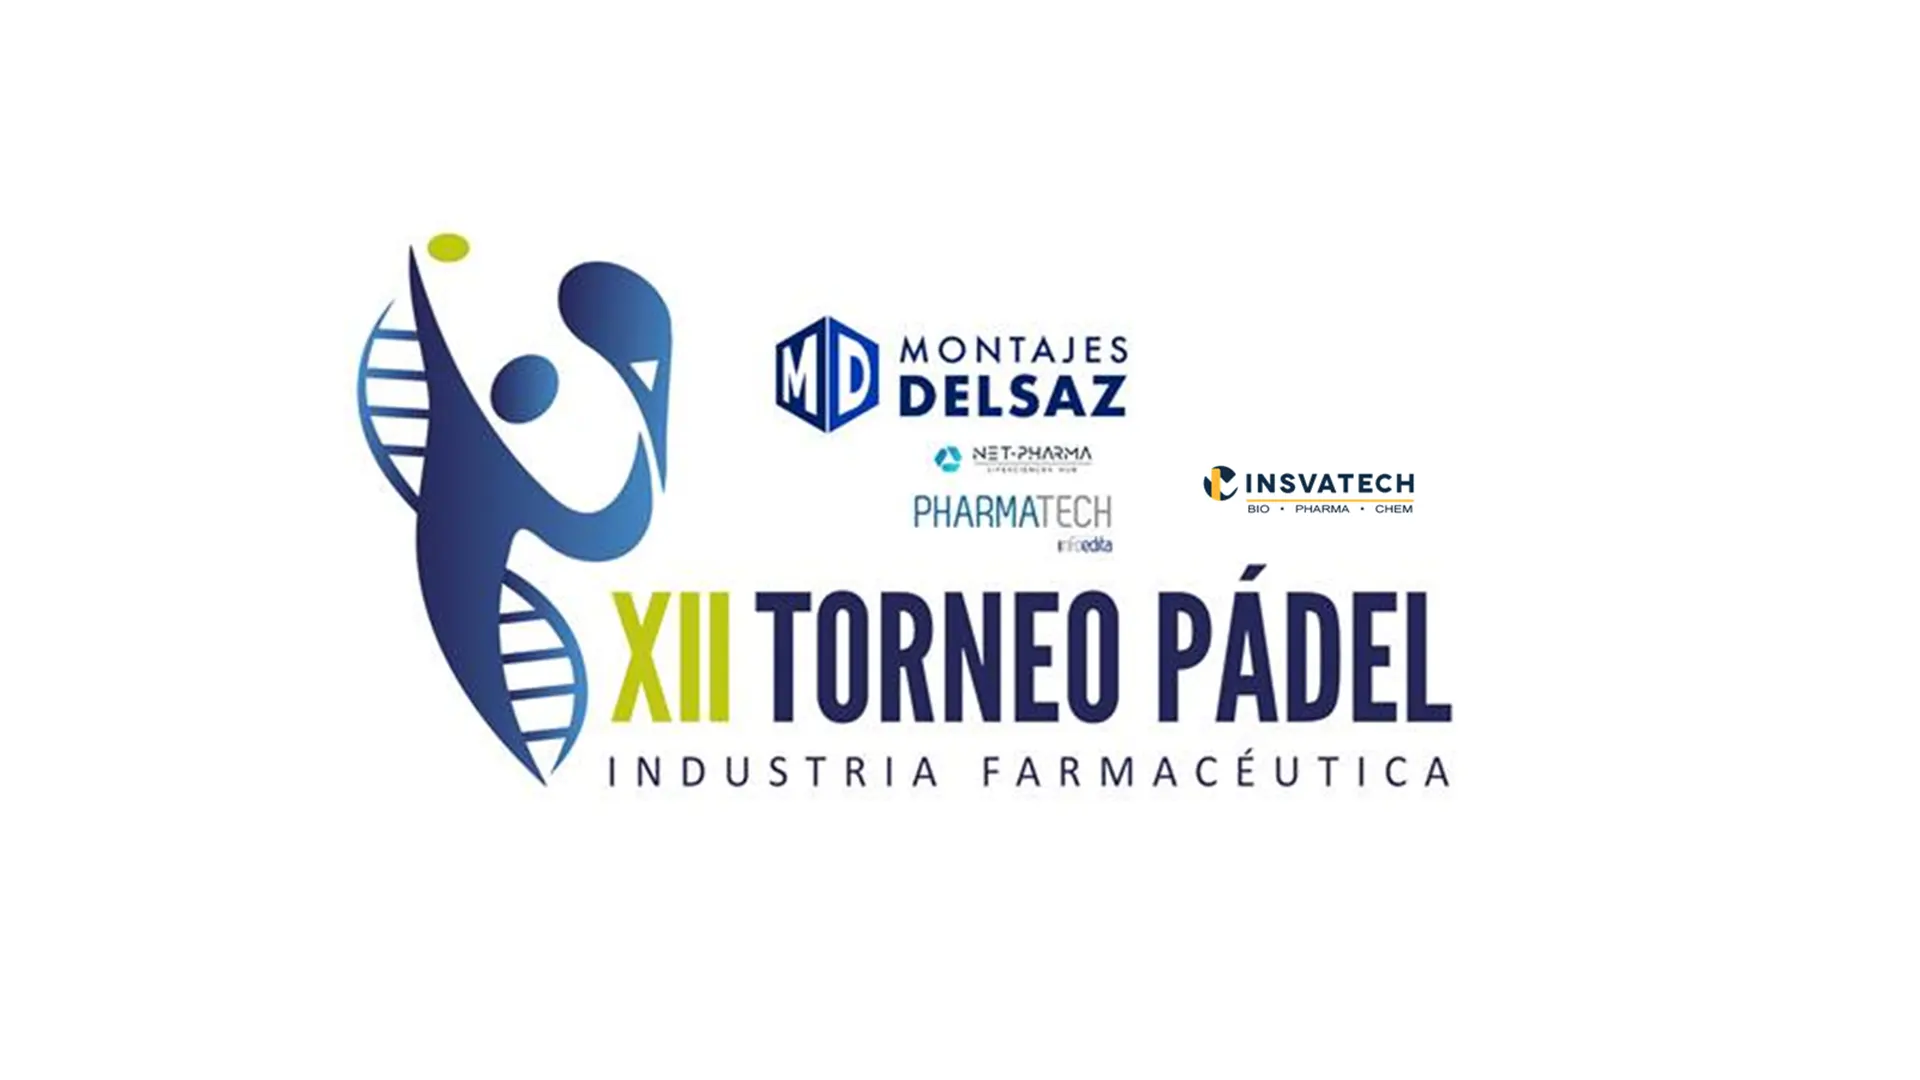 Insvatech patrocinador del próximo Torneo XII de pádel de la industria farmacéutica